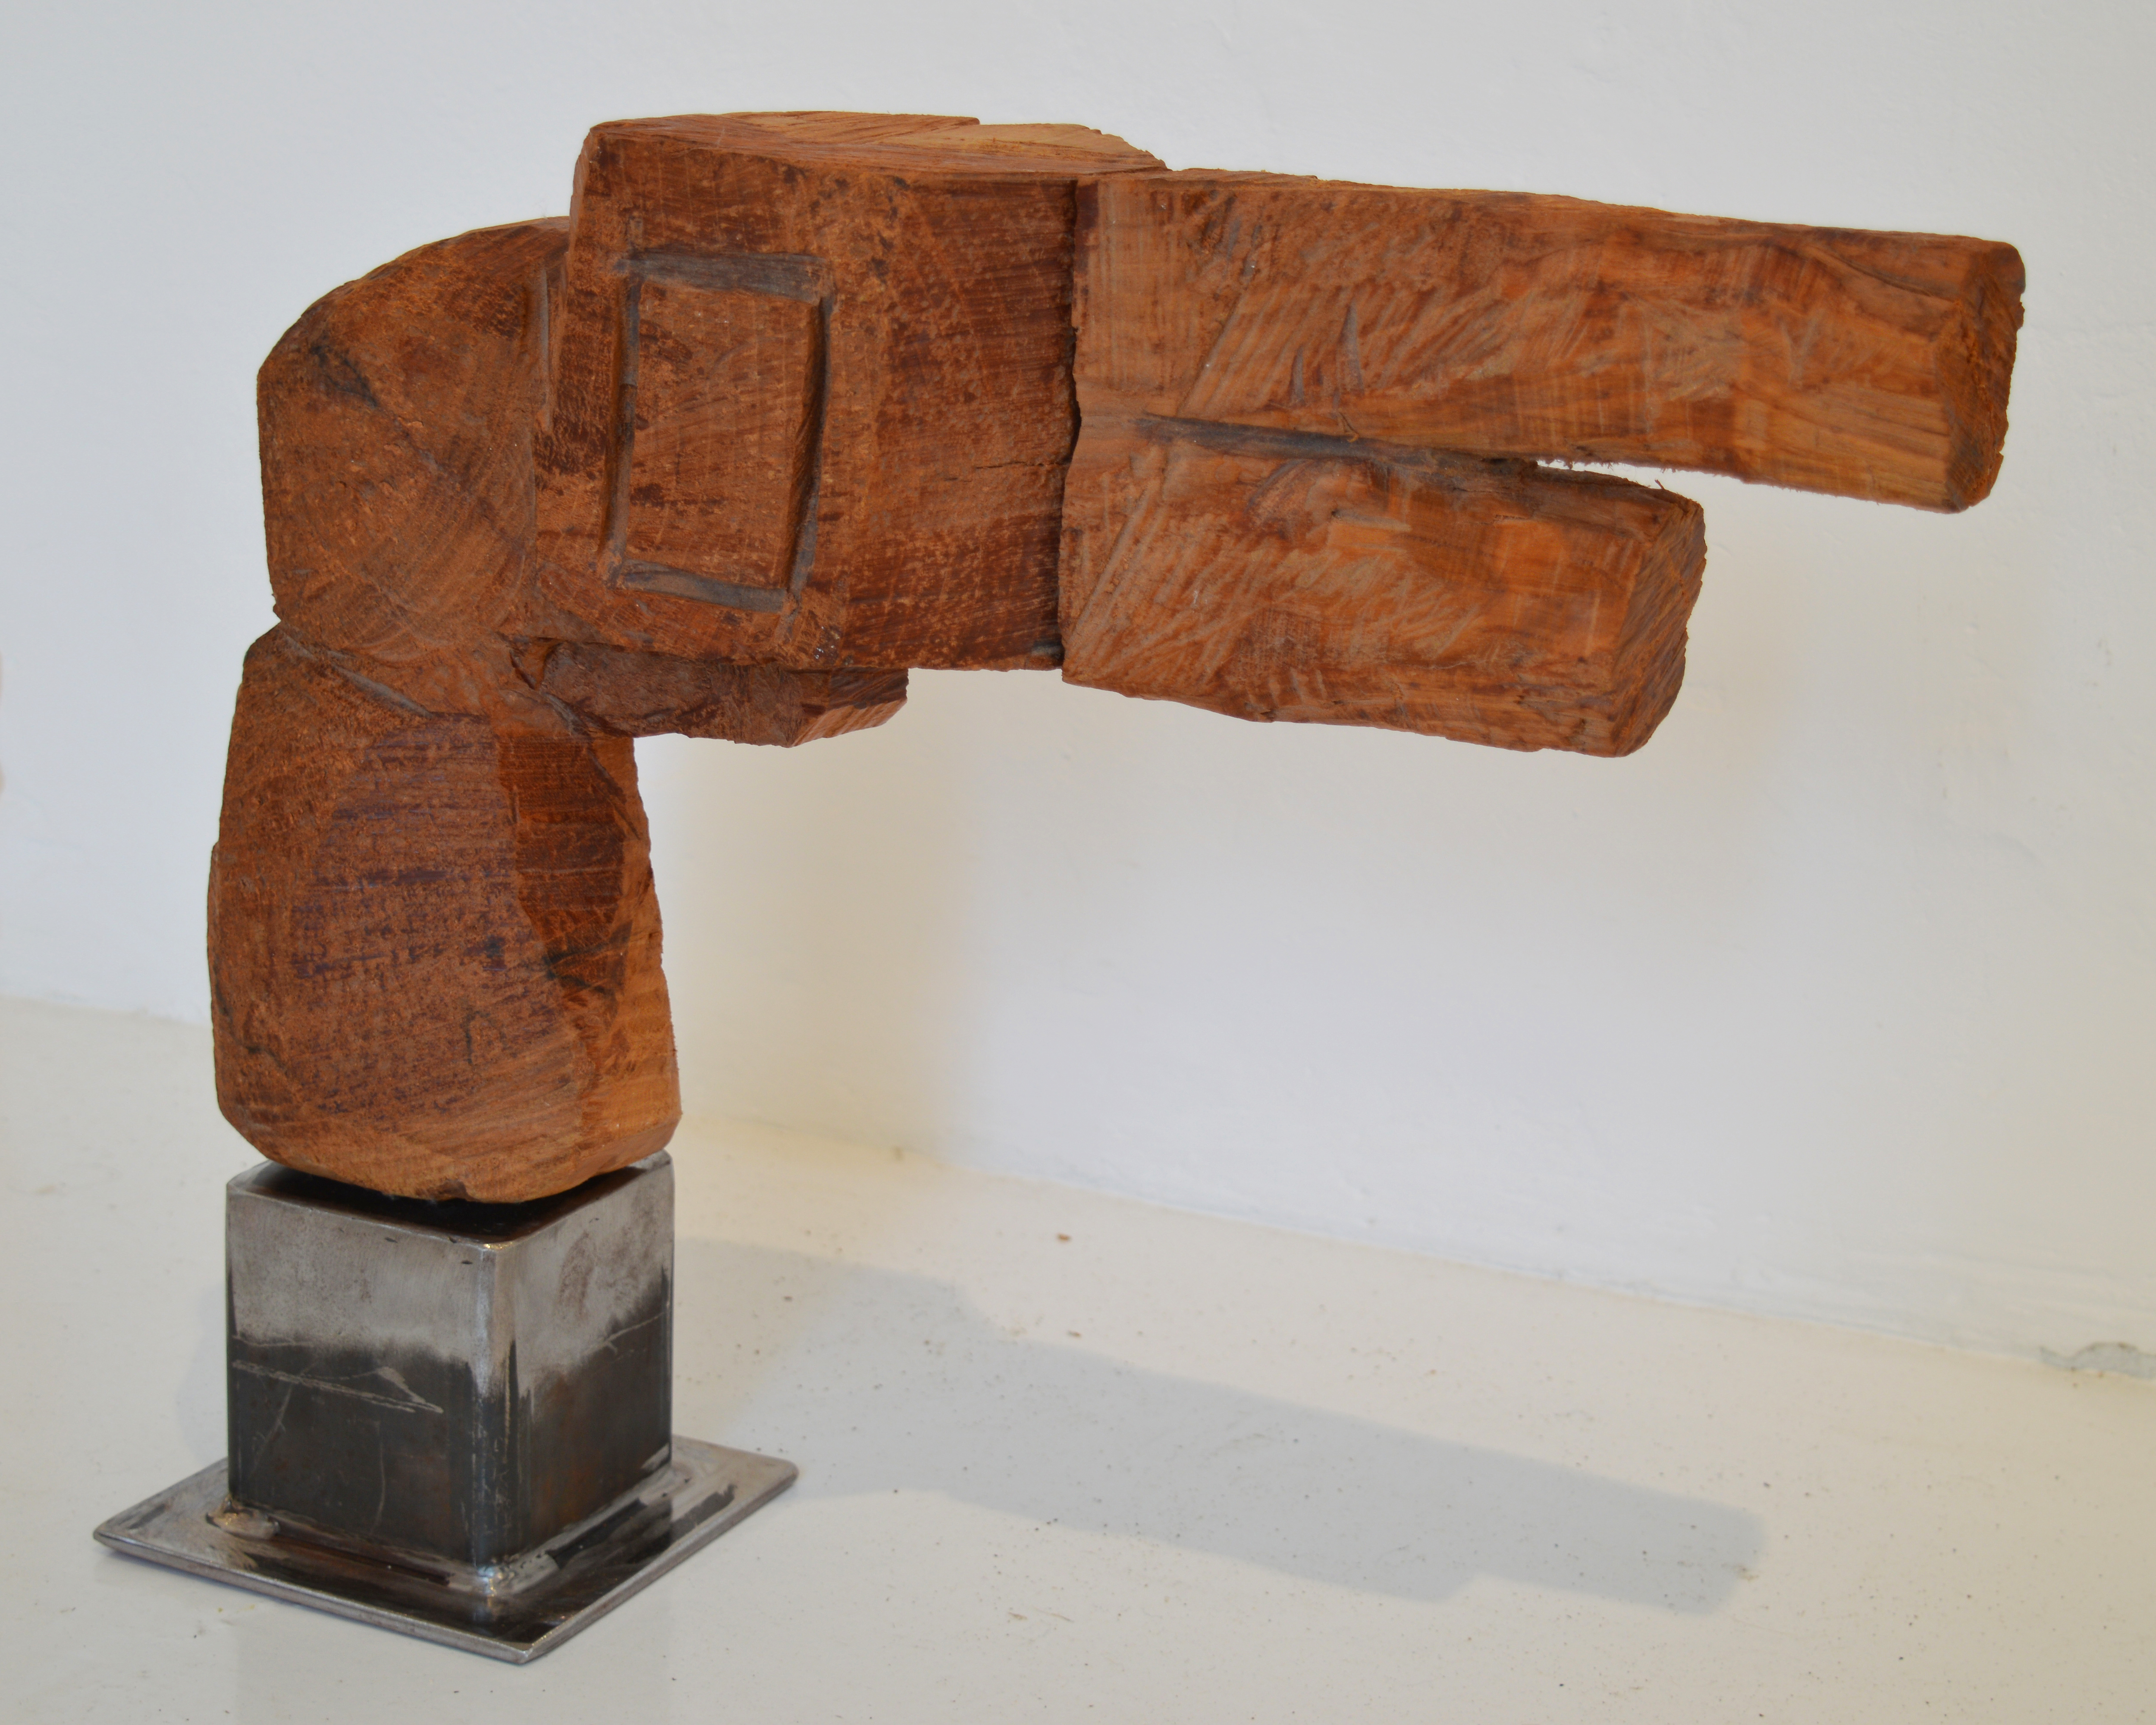 Gun, talla en madera de cerezo, base de hierro, 35 x 46 x 12 cms. 2014